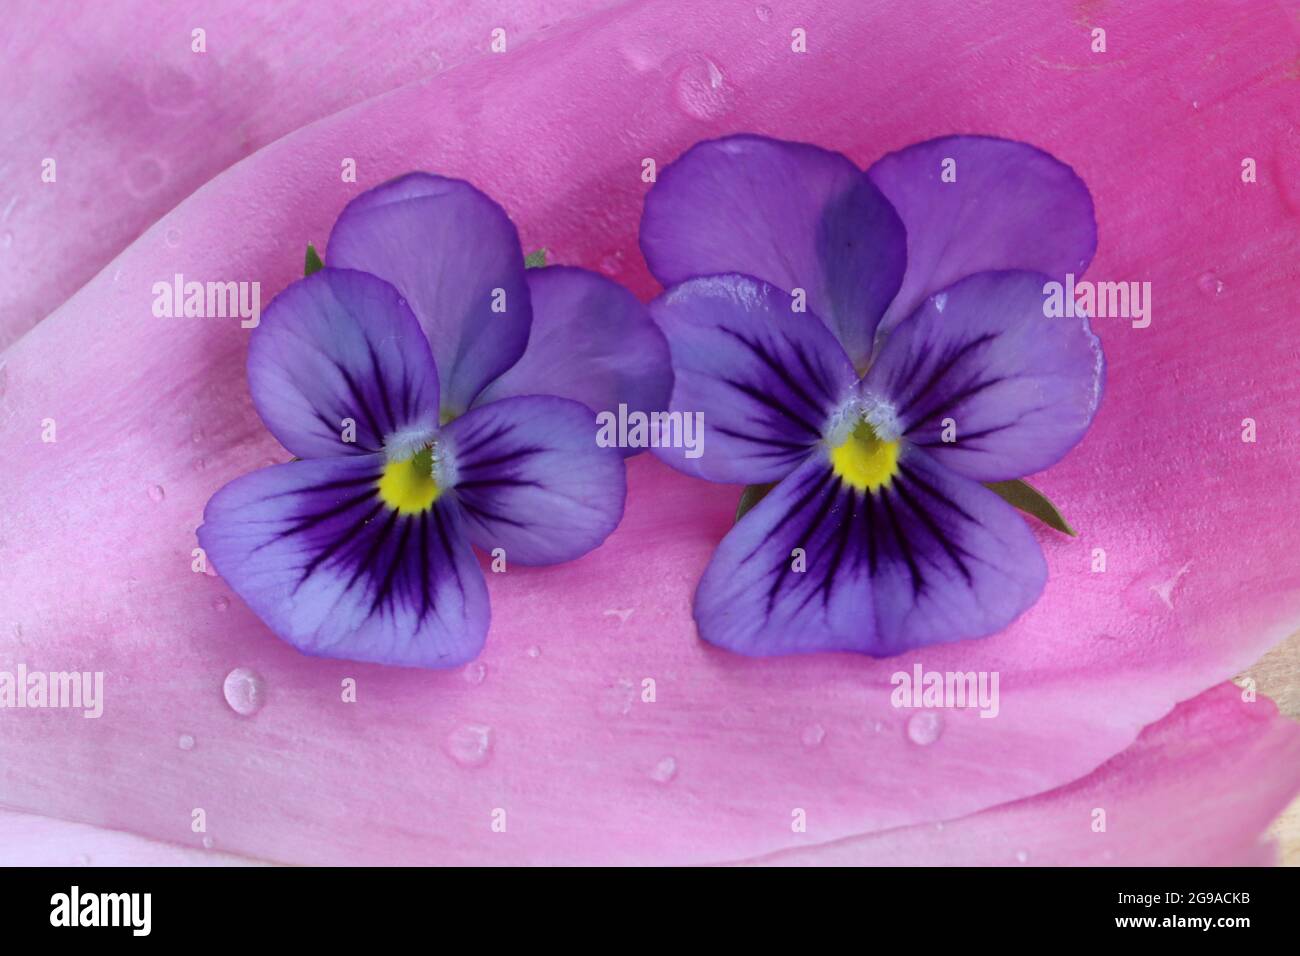 zwei zartlila Hornveilchen liegen auf einem Pfingstrosenblütenblatt Stock Photo